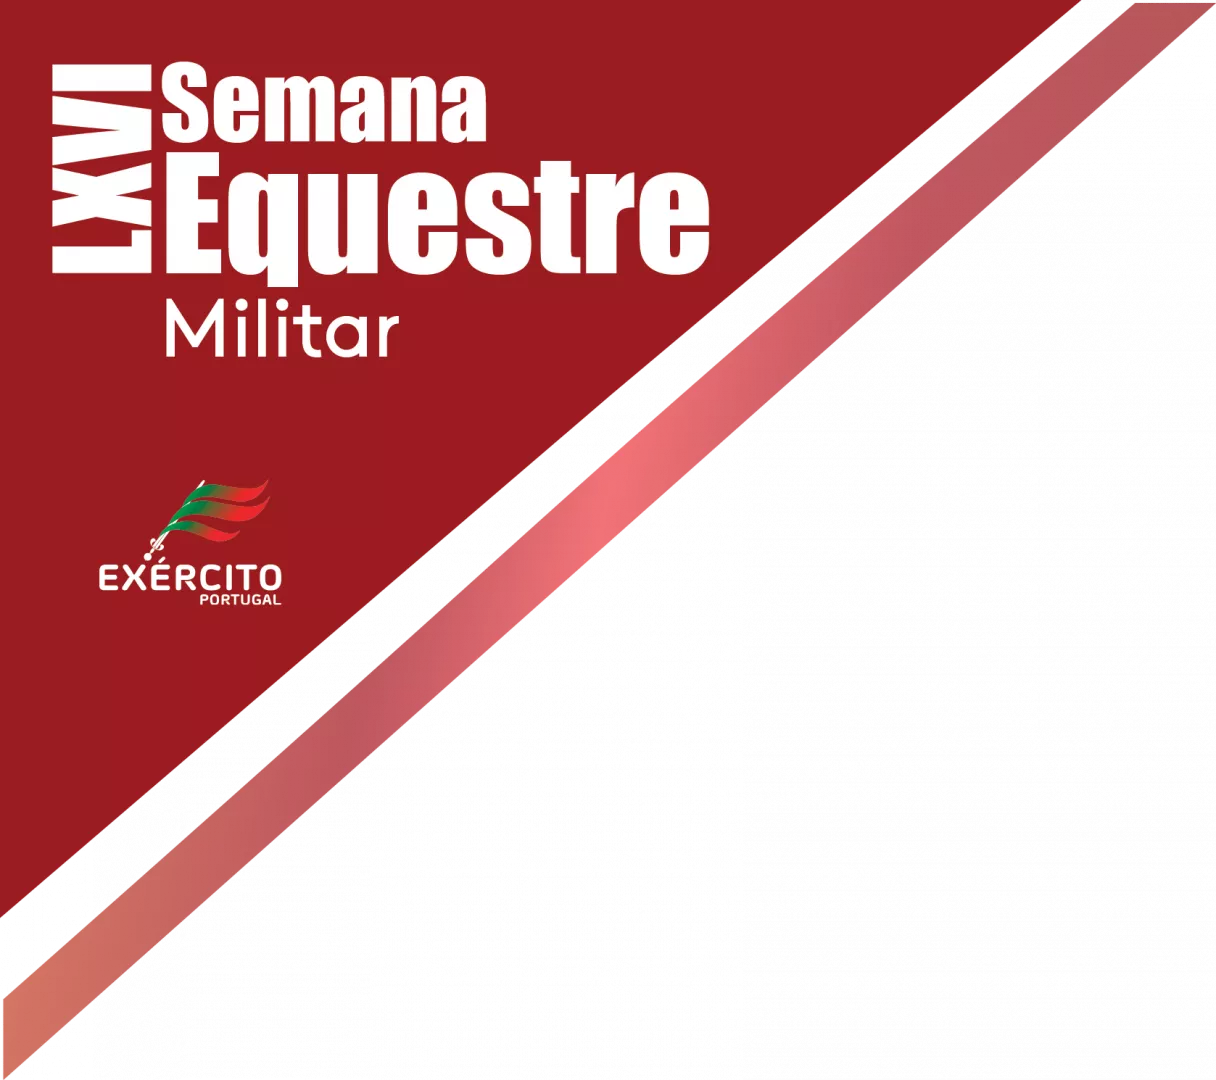 Logo LXVI Semana Equestre Militar